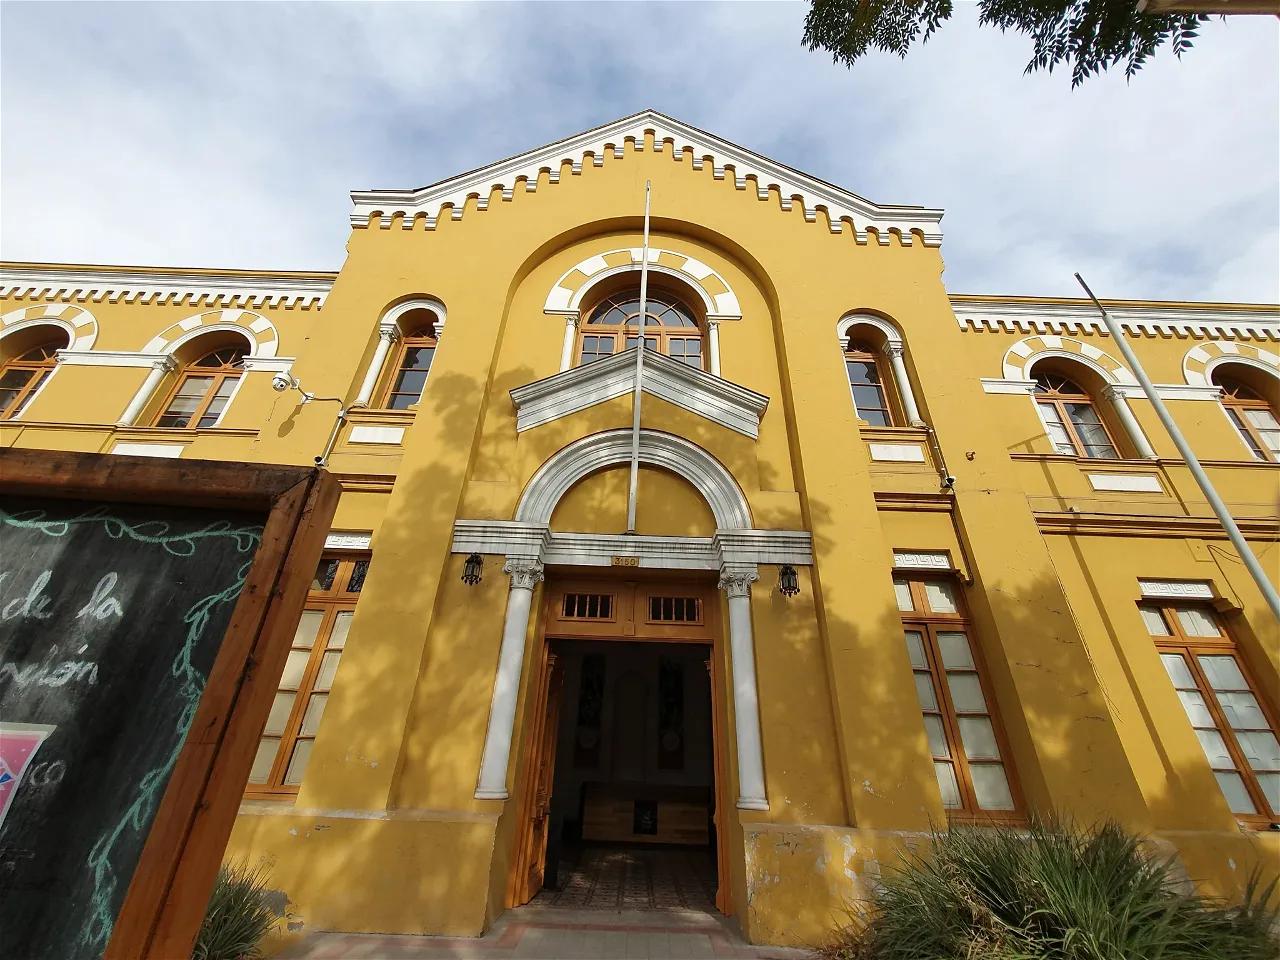 museo gabriela mistral santiago de chile - Qué museos existen en Chile